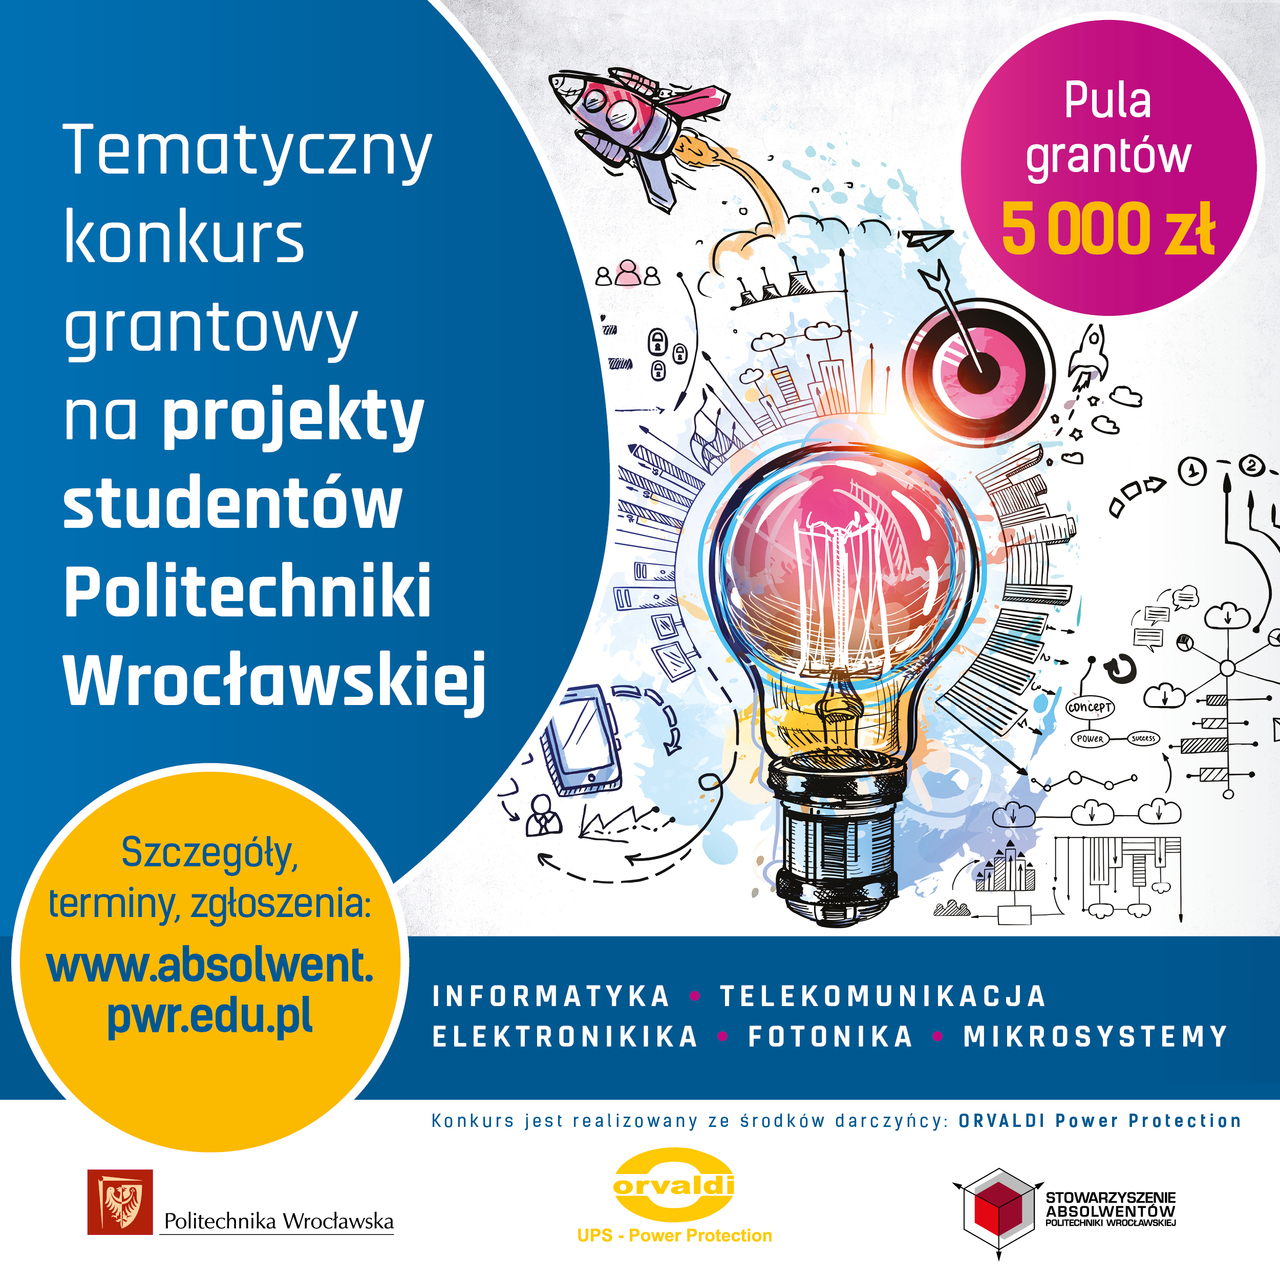 Ruszyły zgłoszenia do tematycznego konkursu grantowego na projekty studentów Politechniki Wrocławskiej